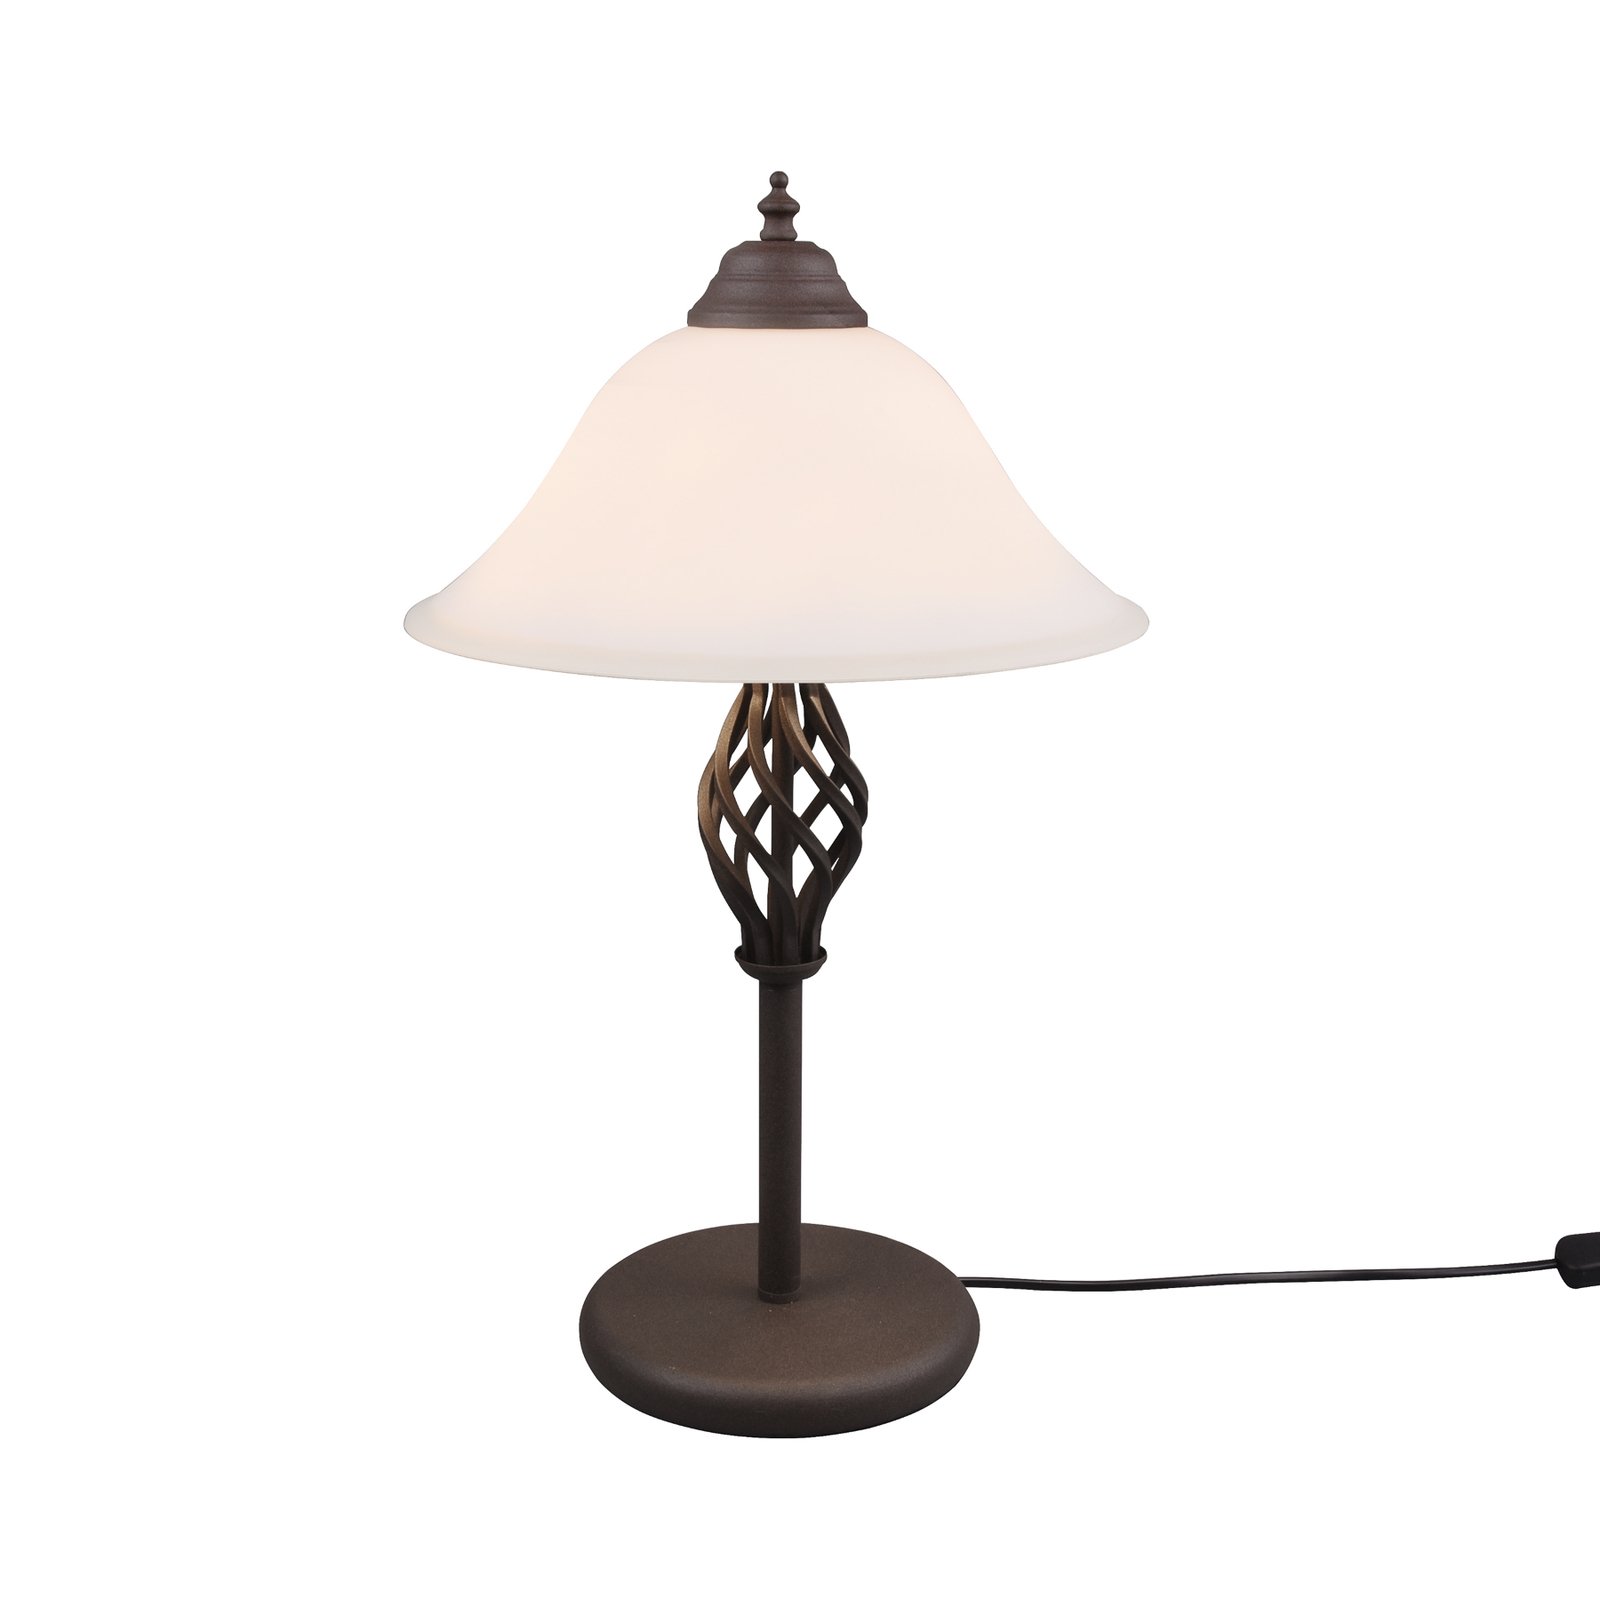 Stolní lampa Rustica s lankovým vypínačem, rezavá